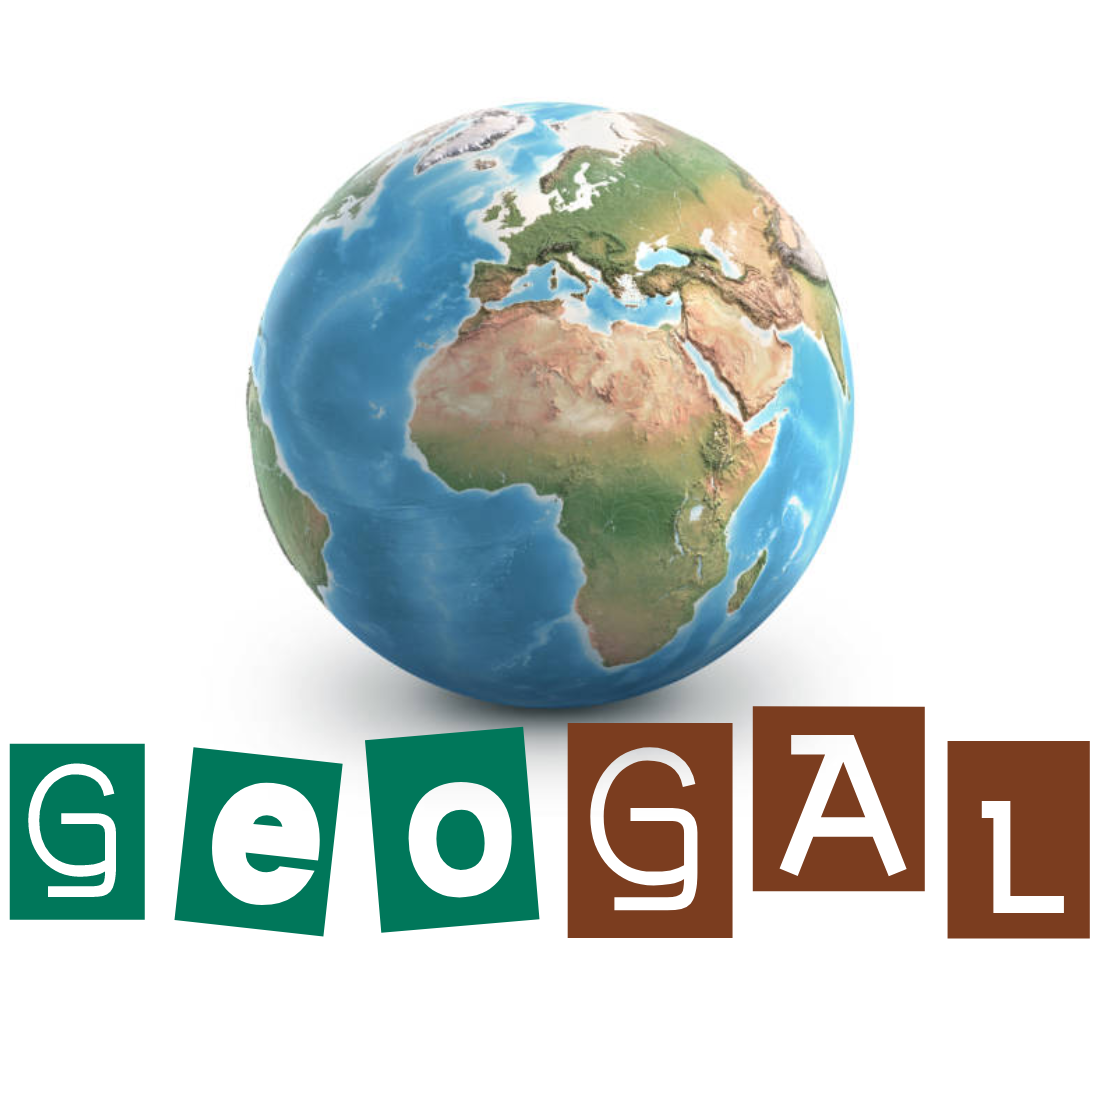 GeoGAL 2007/2013